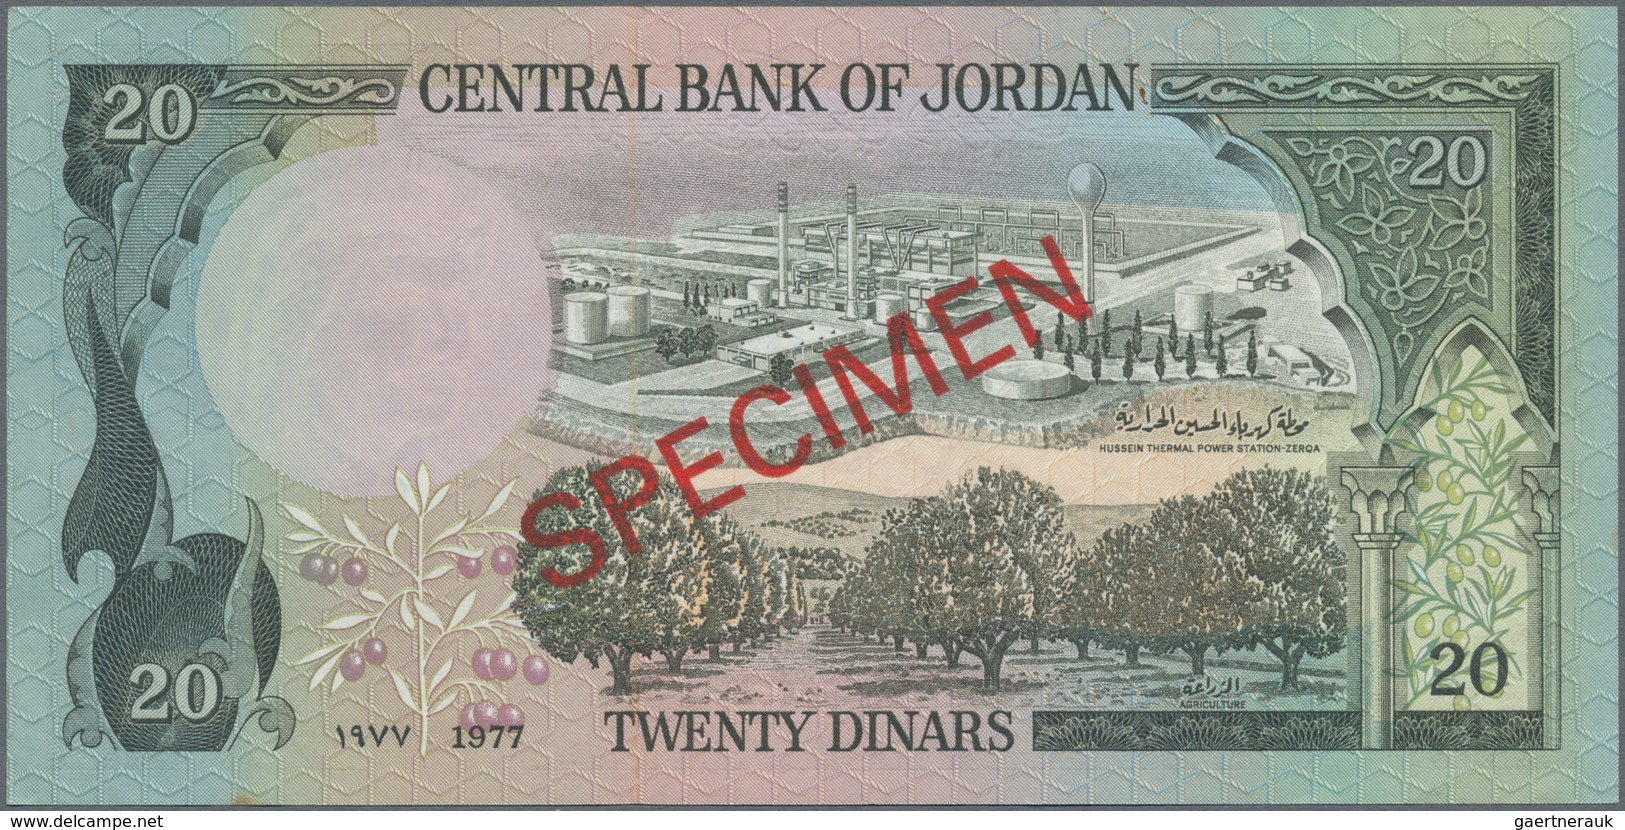 Jordan / Jordanien: Central Bank of Jordan, set with 1/2, 1, 5, 10 and 20 Dinars ND(1975-92) SPECIME